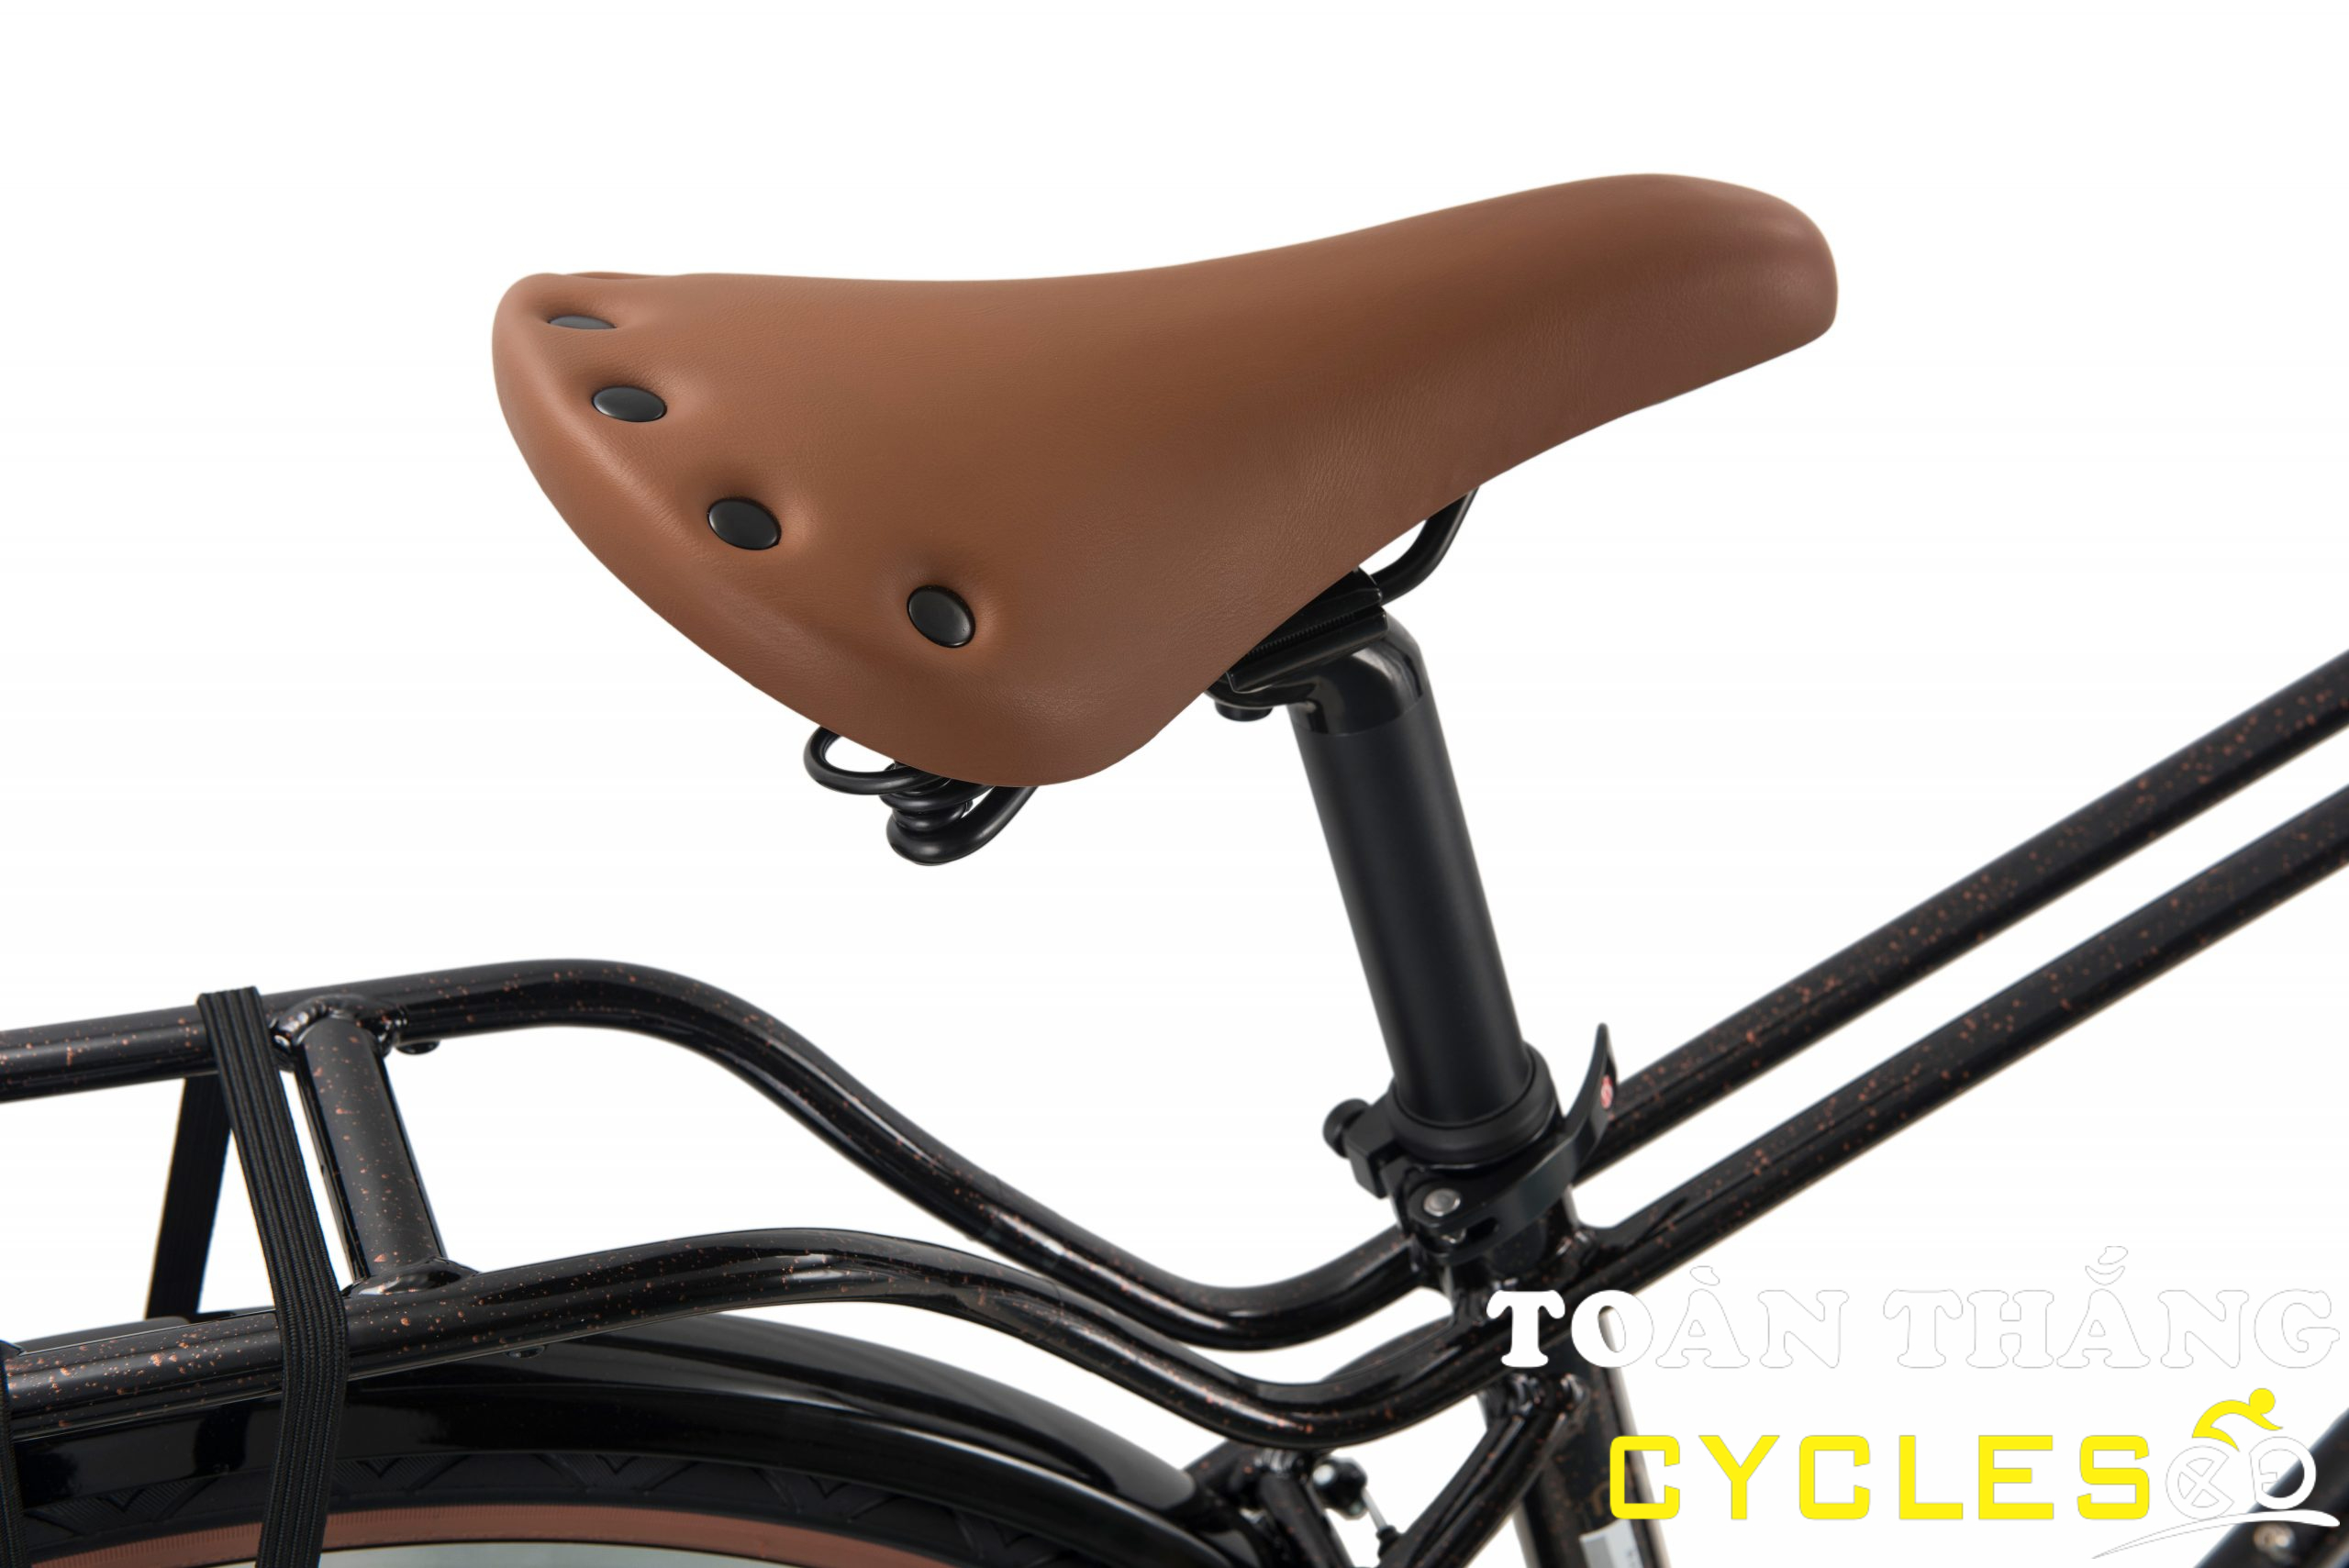 Xe đạp thời trang Vinabike Moka 2022 Đen